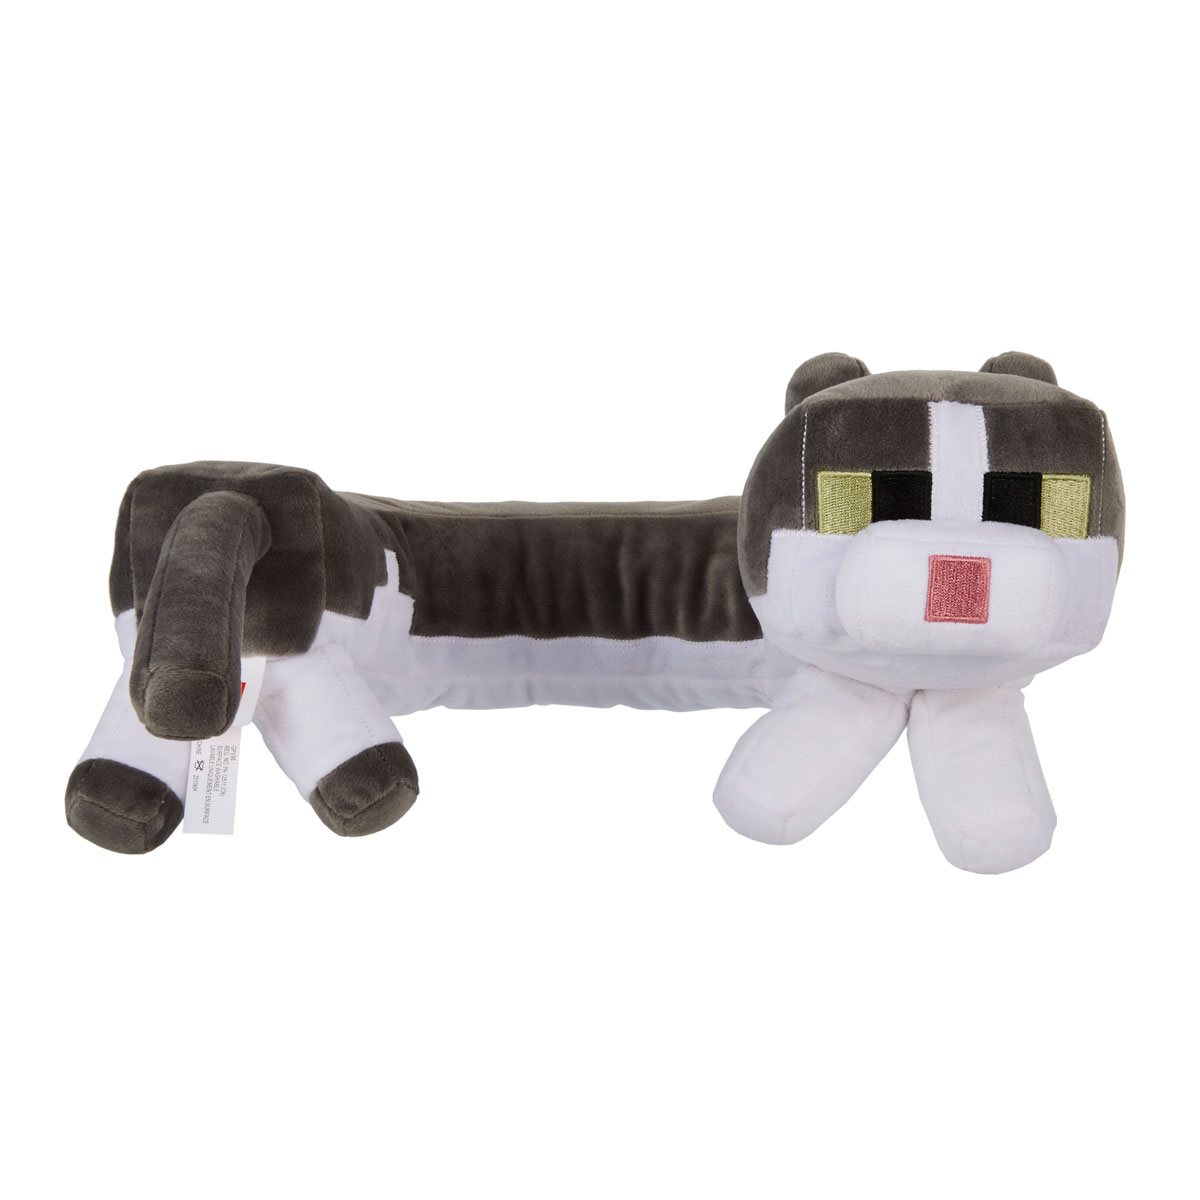 Rounded Panda Plushie  Cat plush toy, Animal dolls, Plush animals